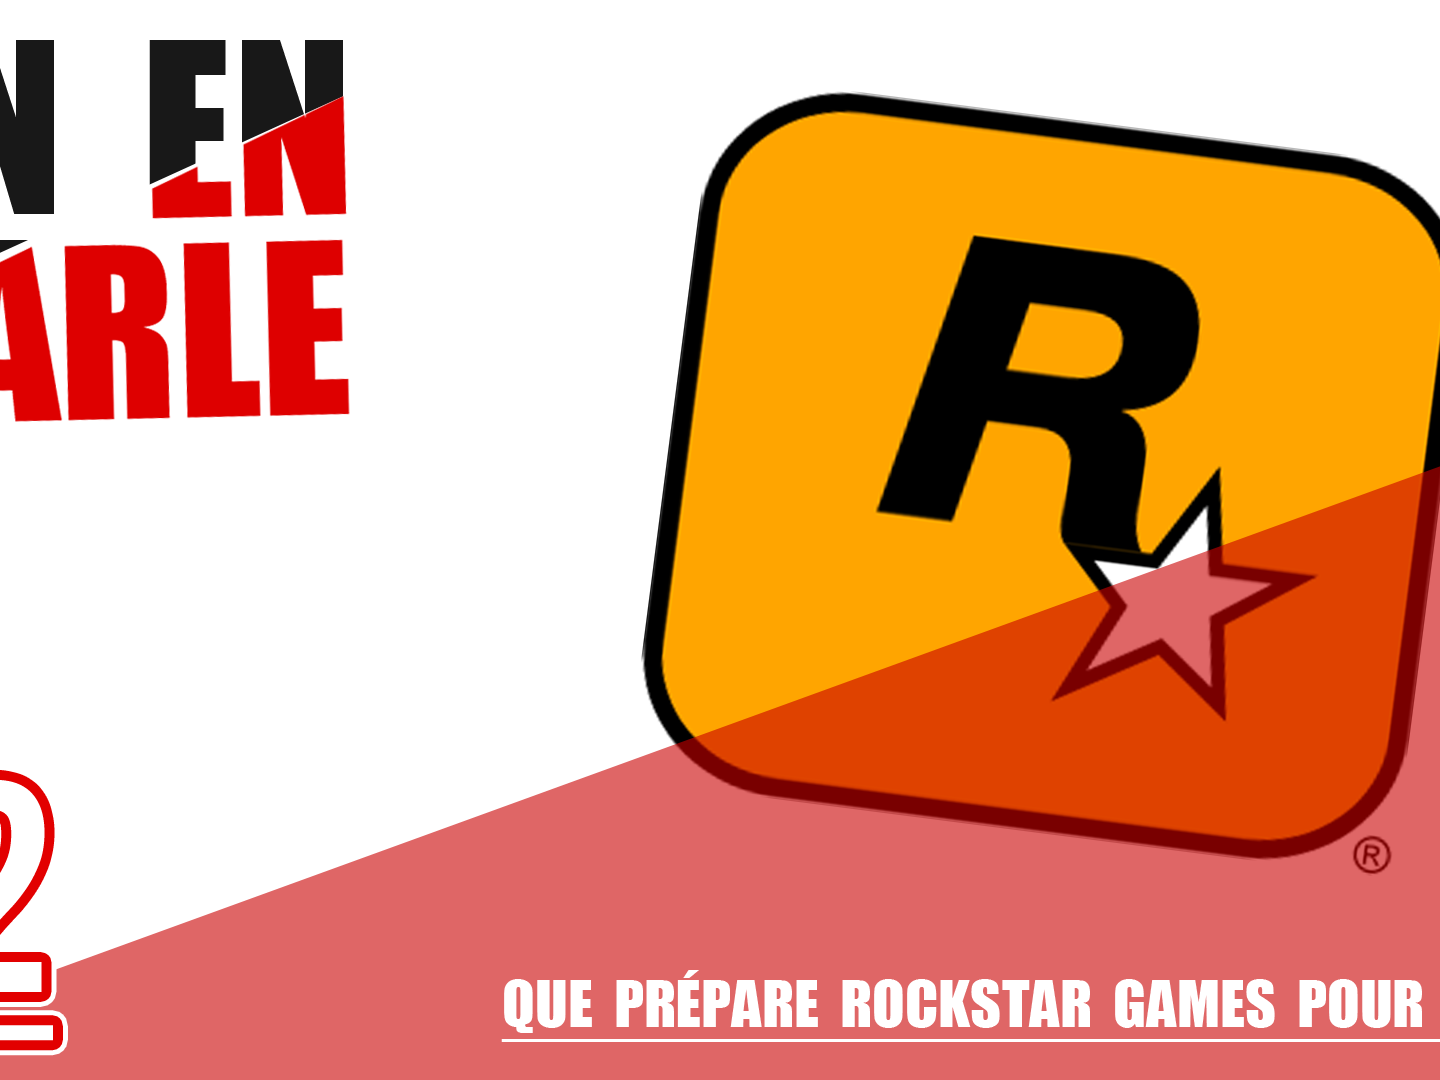 Que prépare Rockstar Games pour 2018 ? On en parle sur rockstar Mag